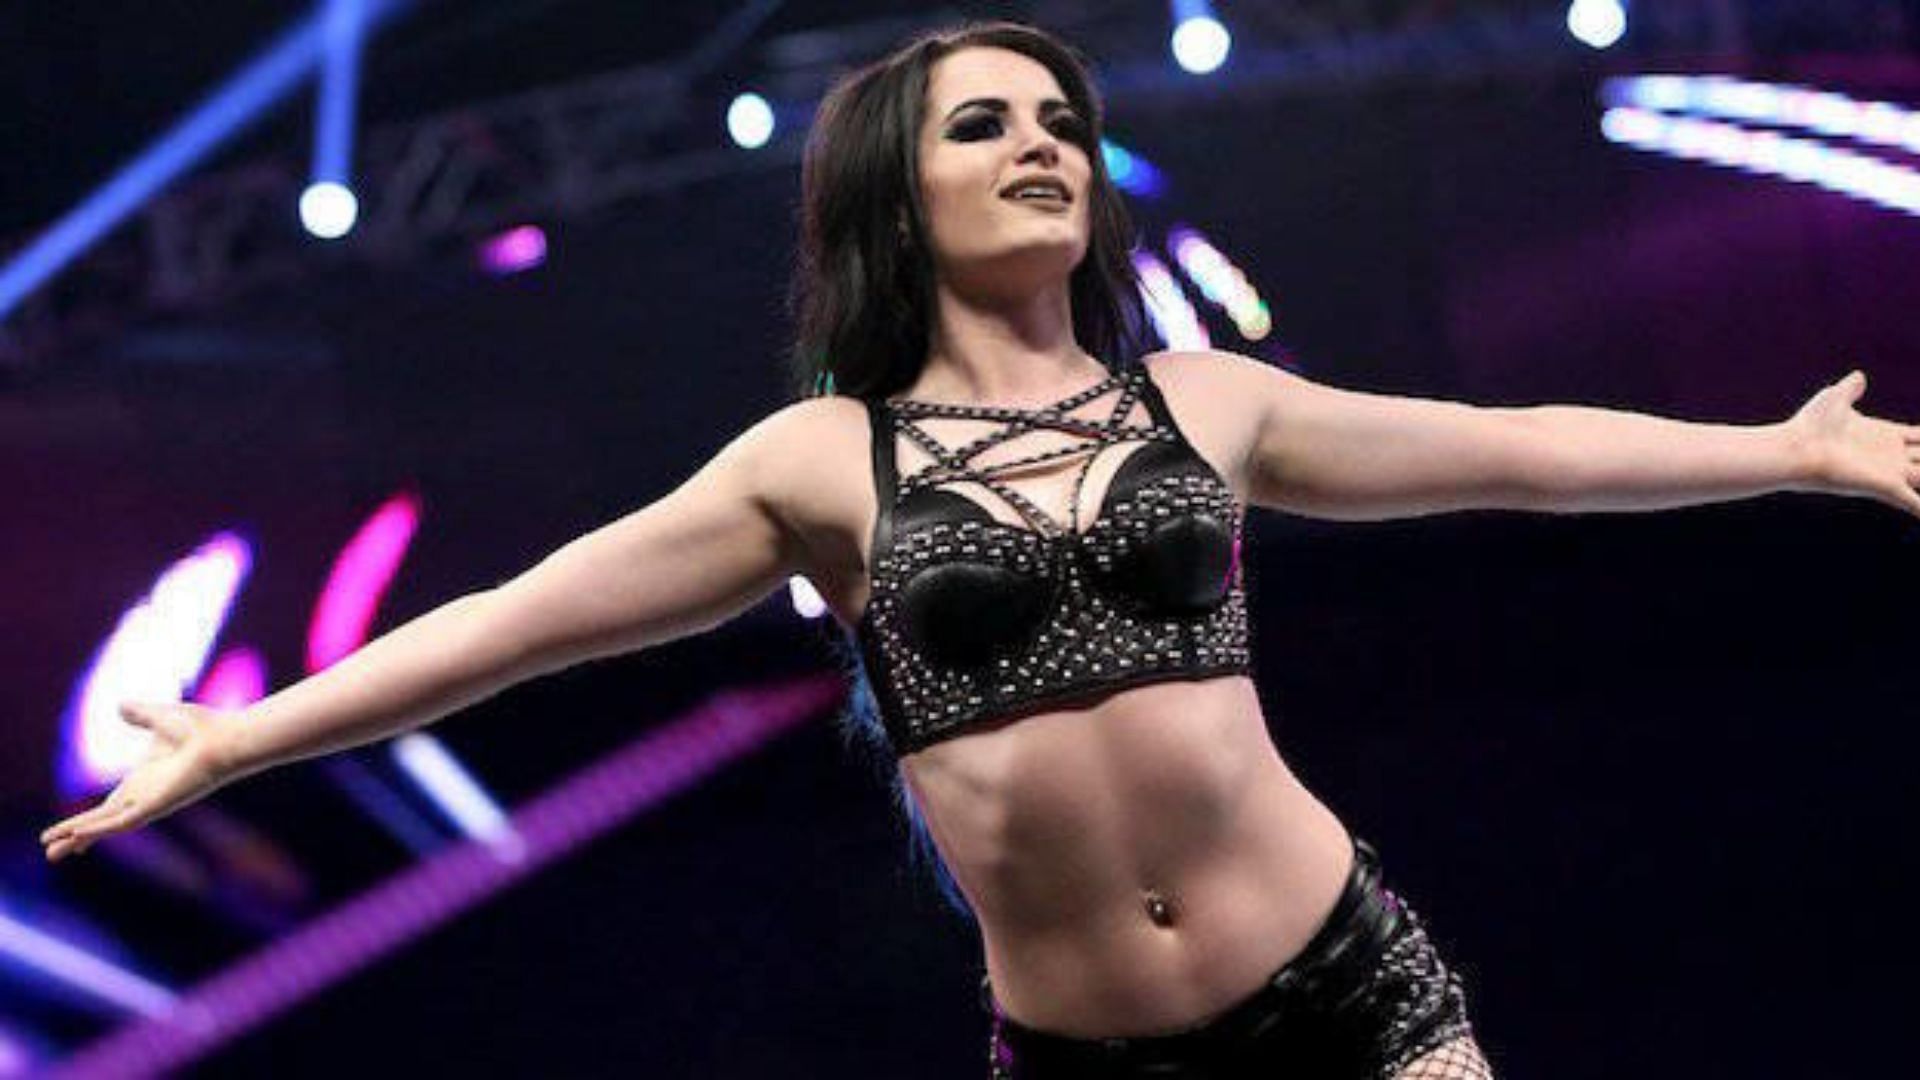 Saraya (fka Paige) at a WWE event